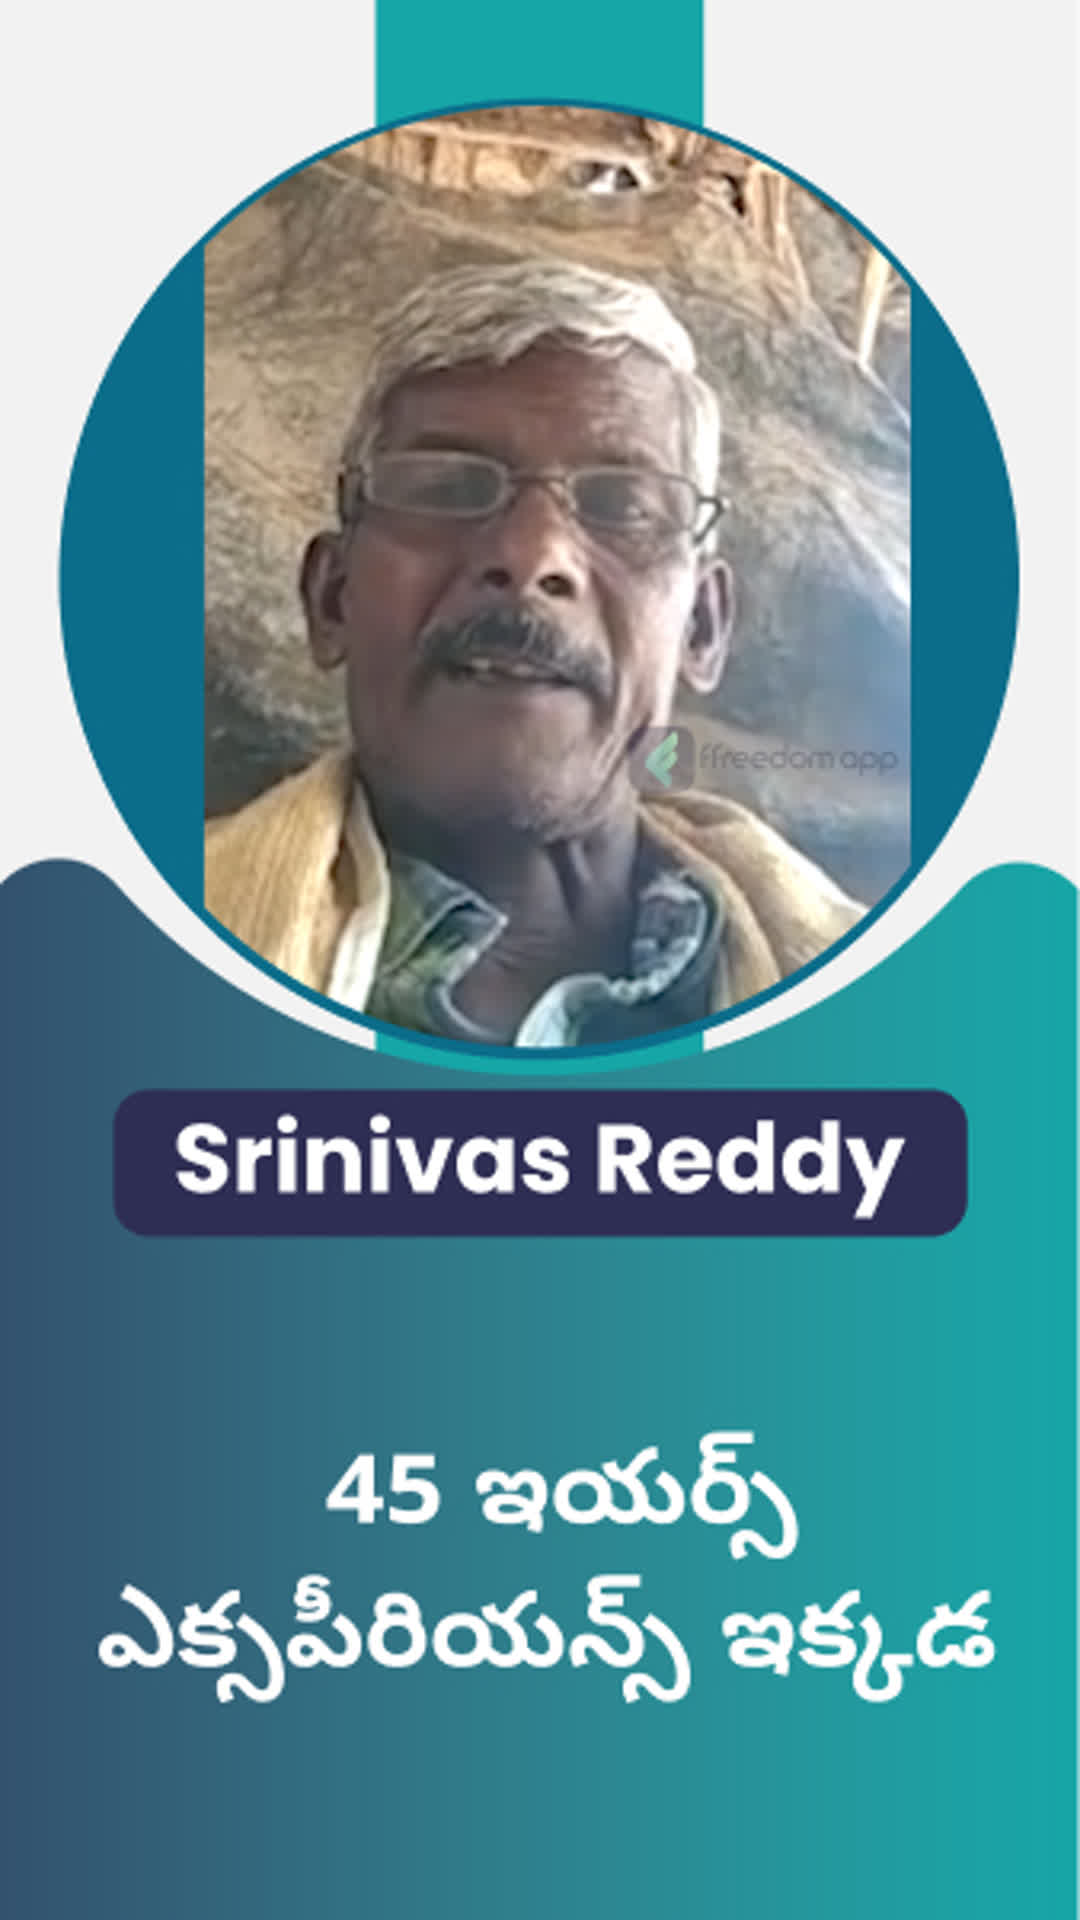 Srinivas Reddy's Honest Review of ffreedom app - West Godavari ,Telangana